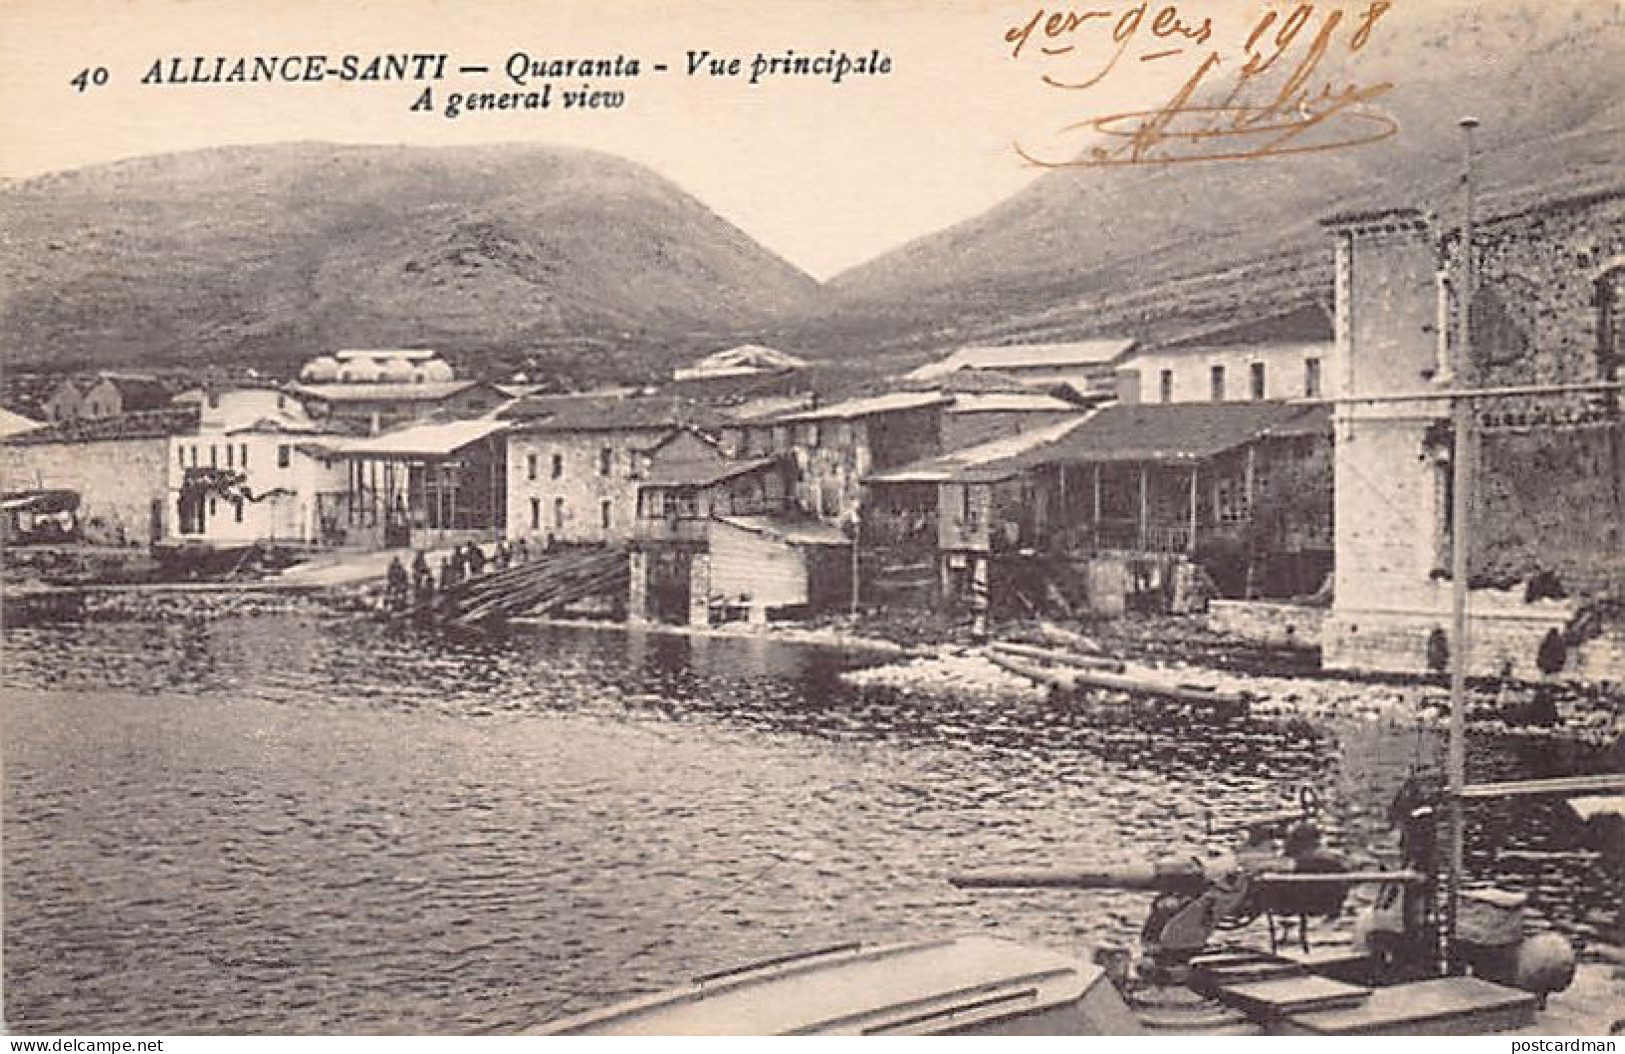 Albania - SARANDË - General View - Publ. Ch. Colas 40 - Albania